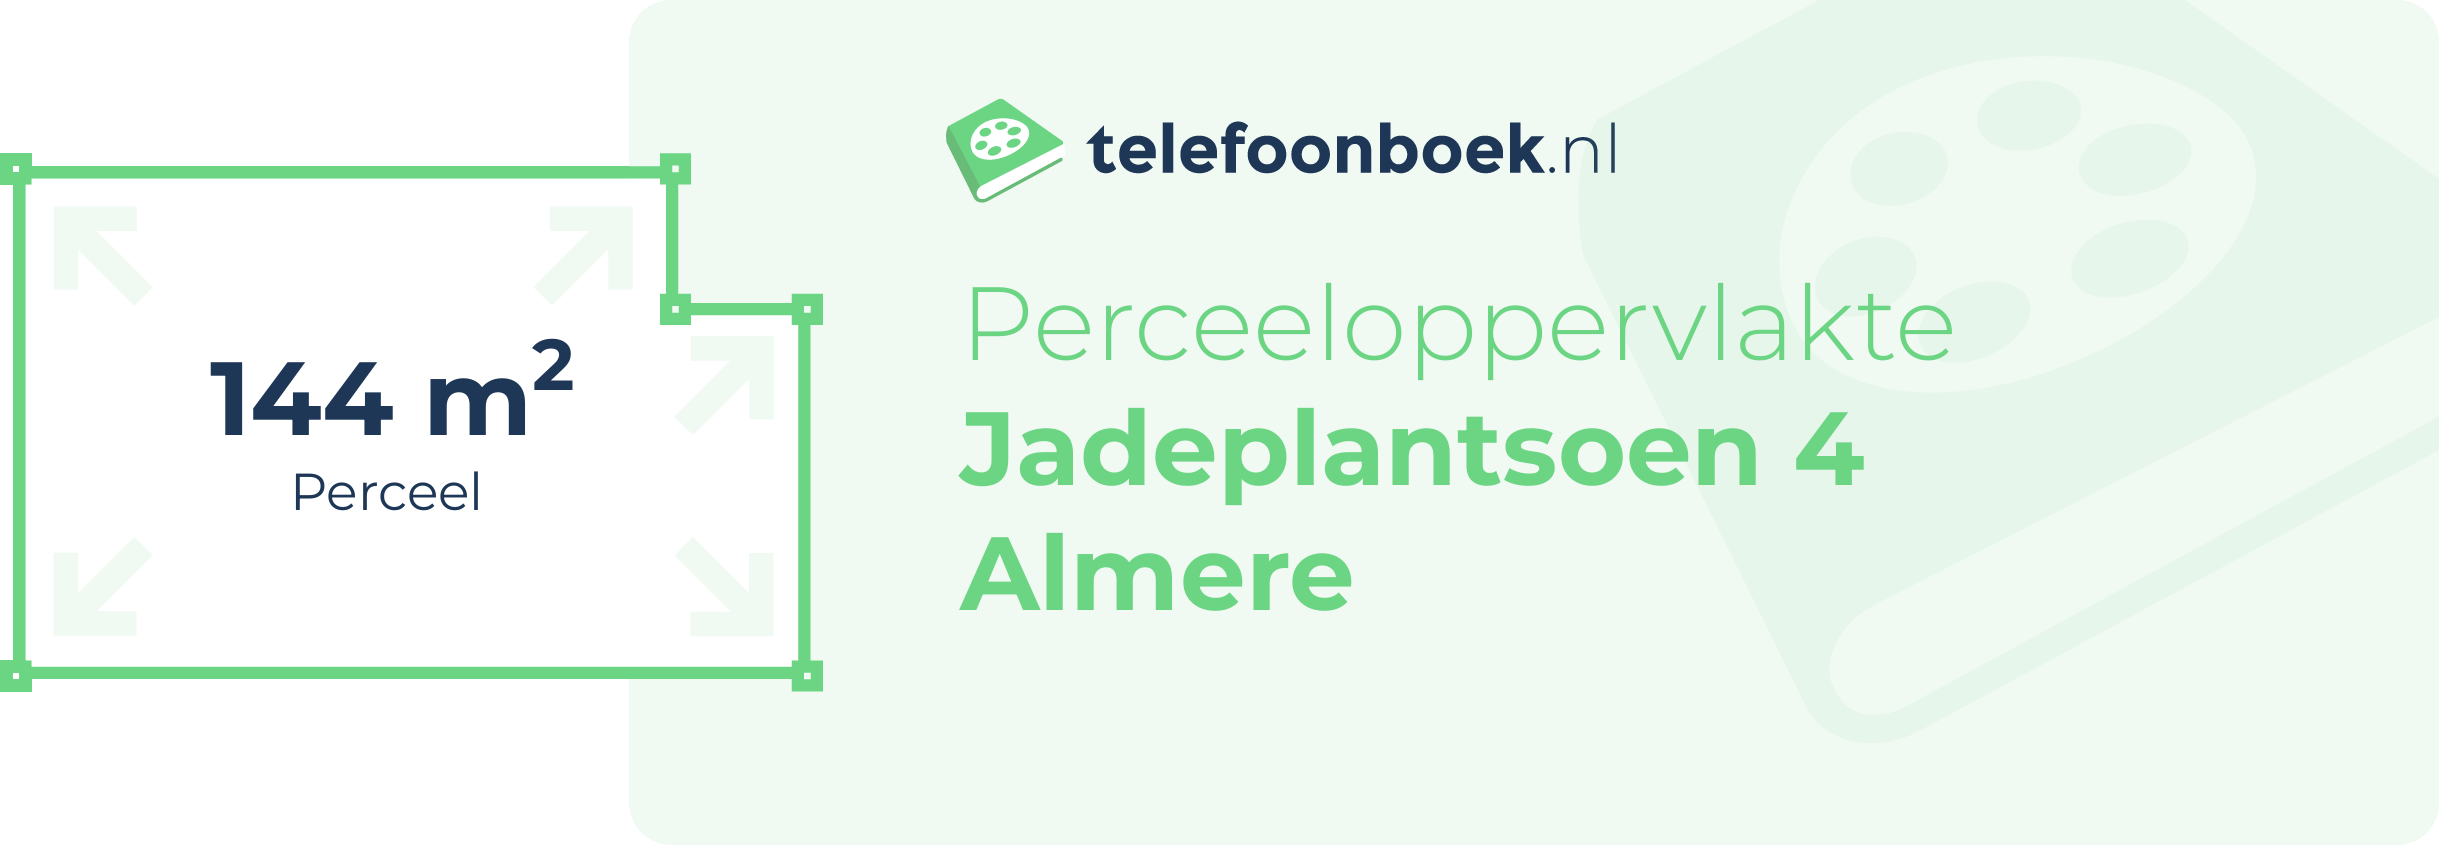 Perceeloppervlakte Jadeplantsoen 4 Almere